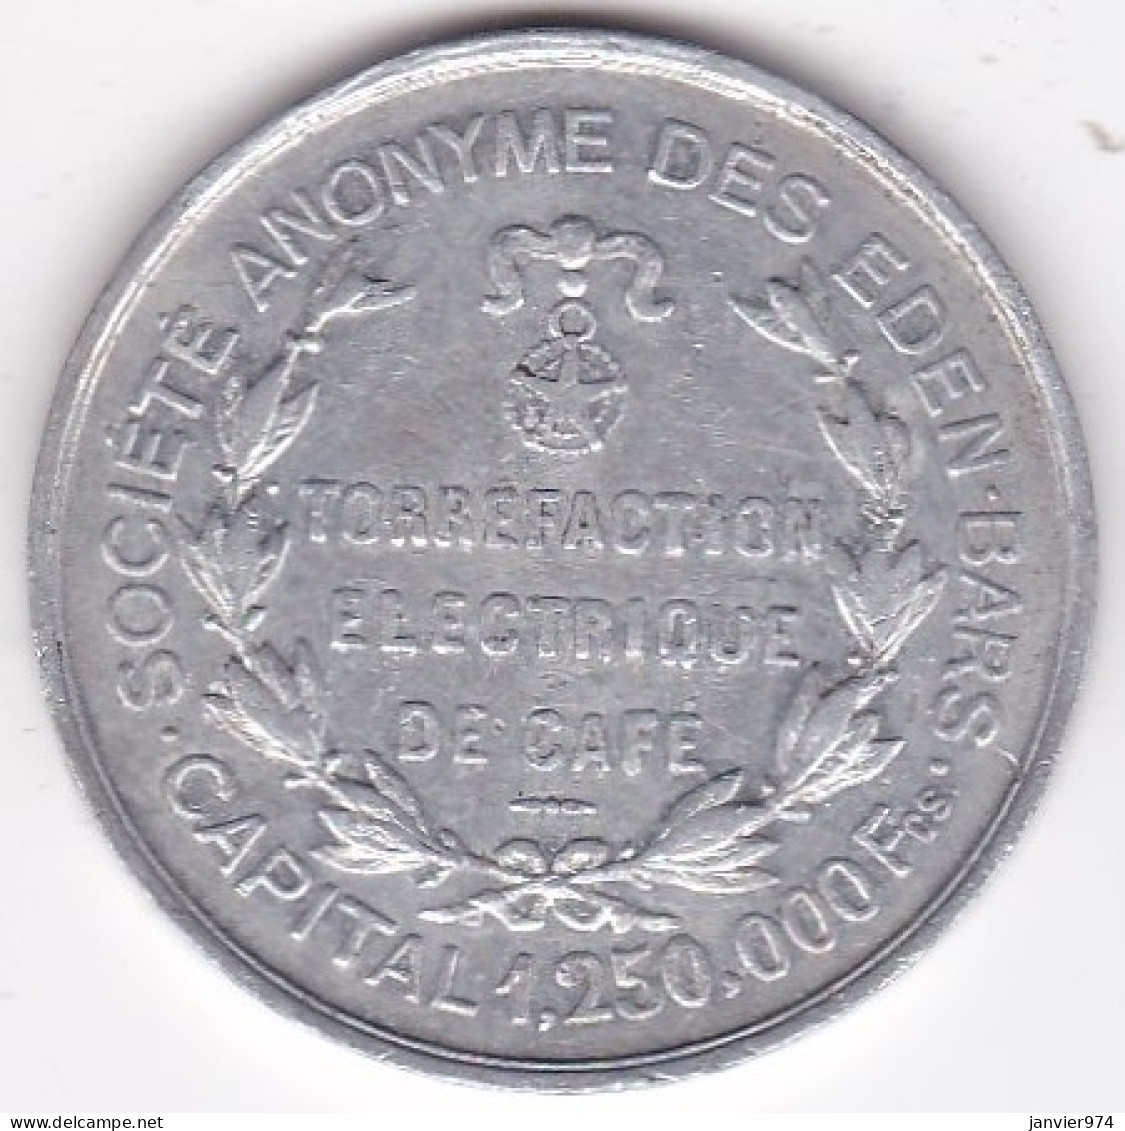 69 Rhône. Lyon , Société Anonyme Des Eden-Bars, Torréfaction Electrique De Café. 10 Centimes, En Aluminium - Monetary / Of Necessity